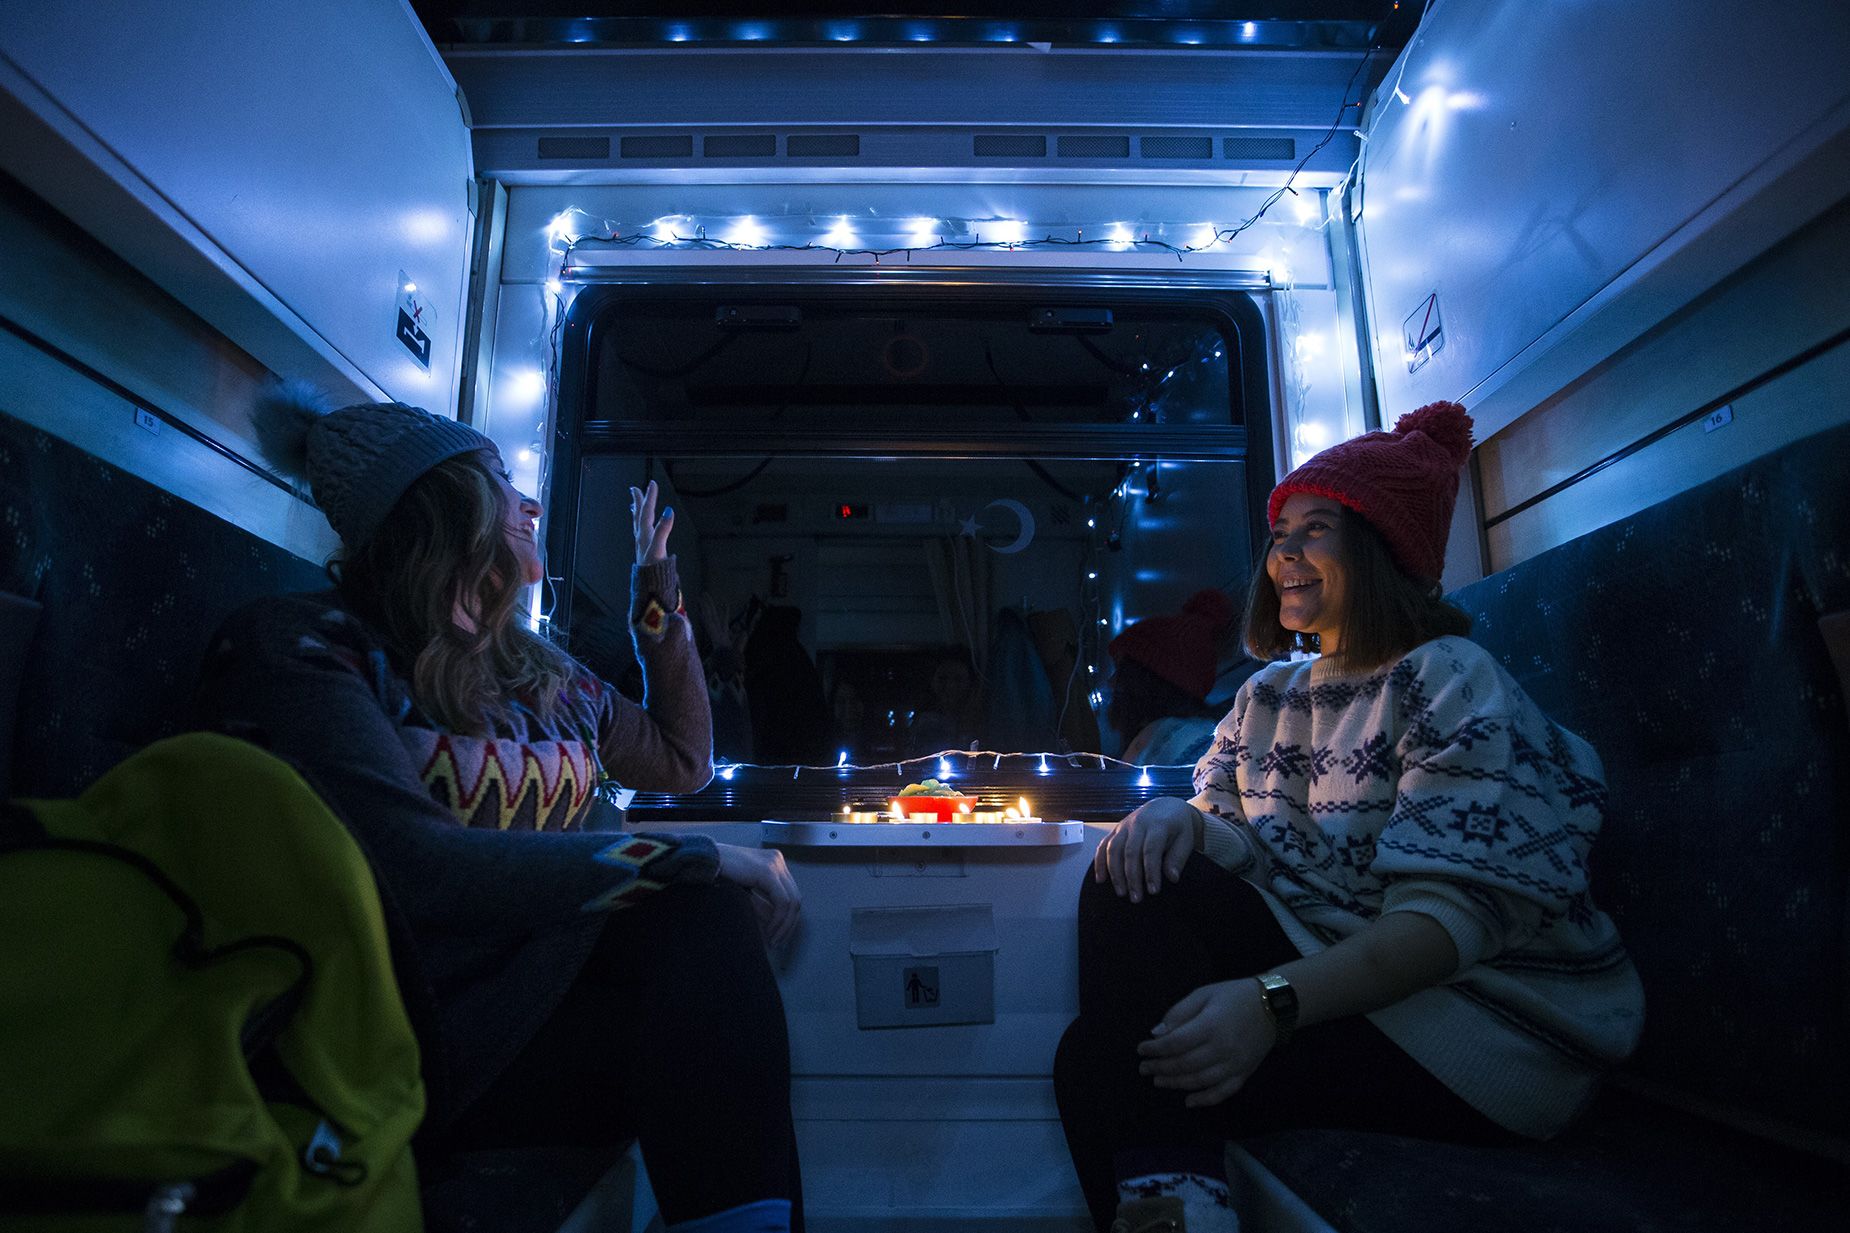 Los viajeros suelen decorar sus camarotes con guirnaldas de luces y velas. (Mustafa Kamaci/Anadolu Agency/Getty Images)